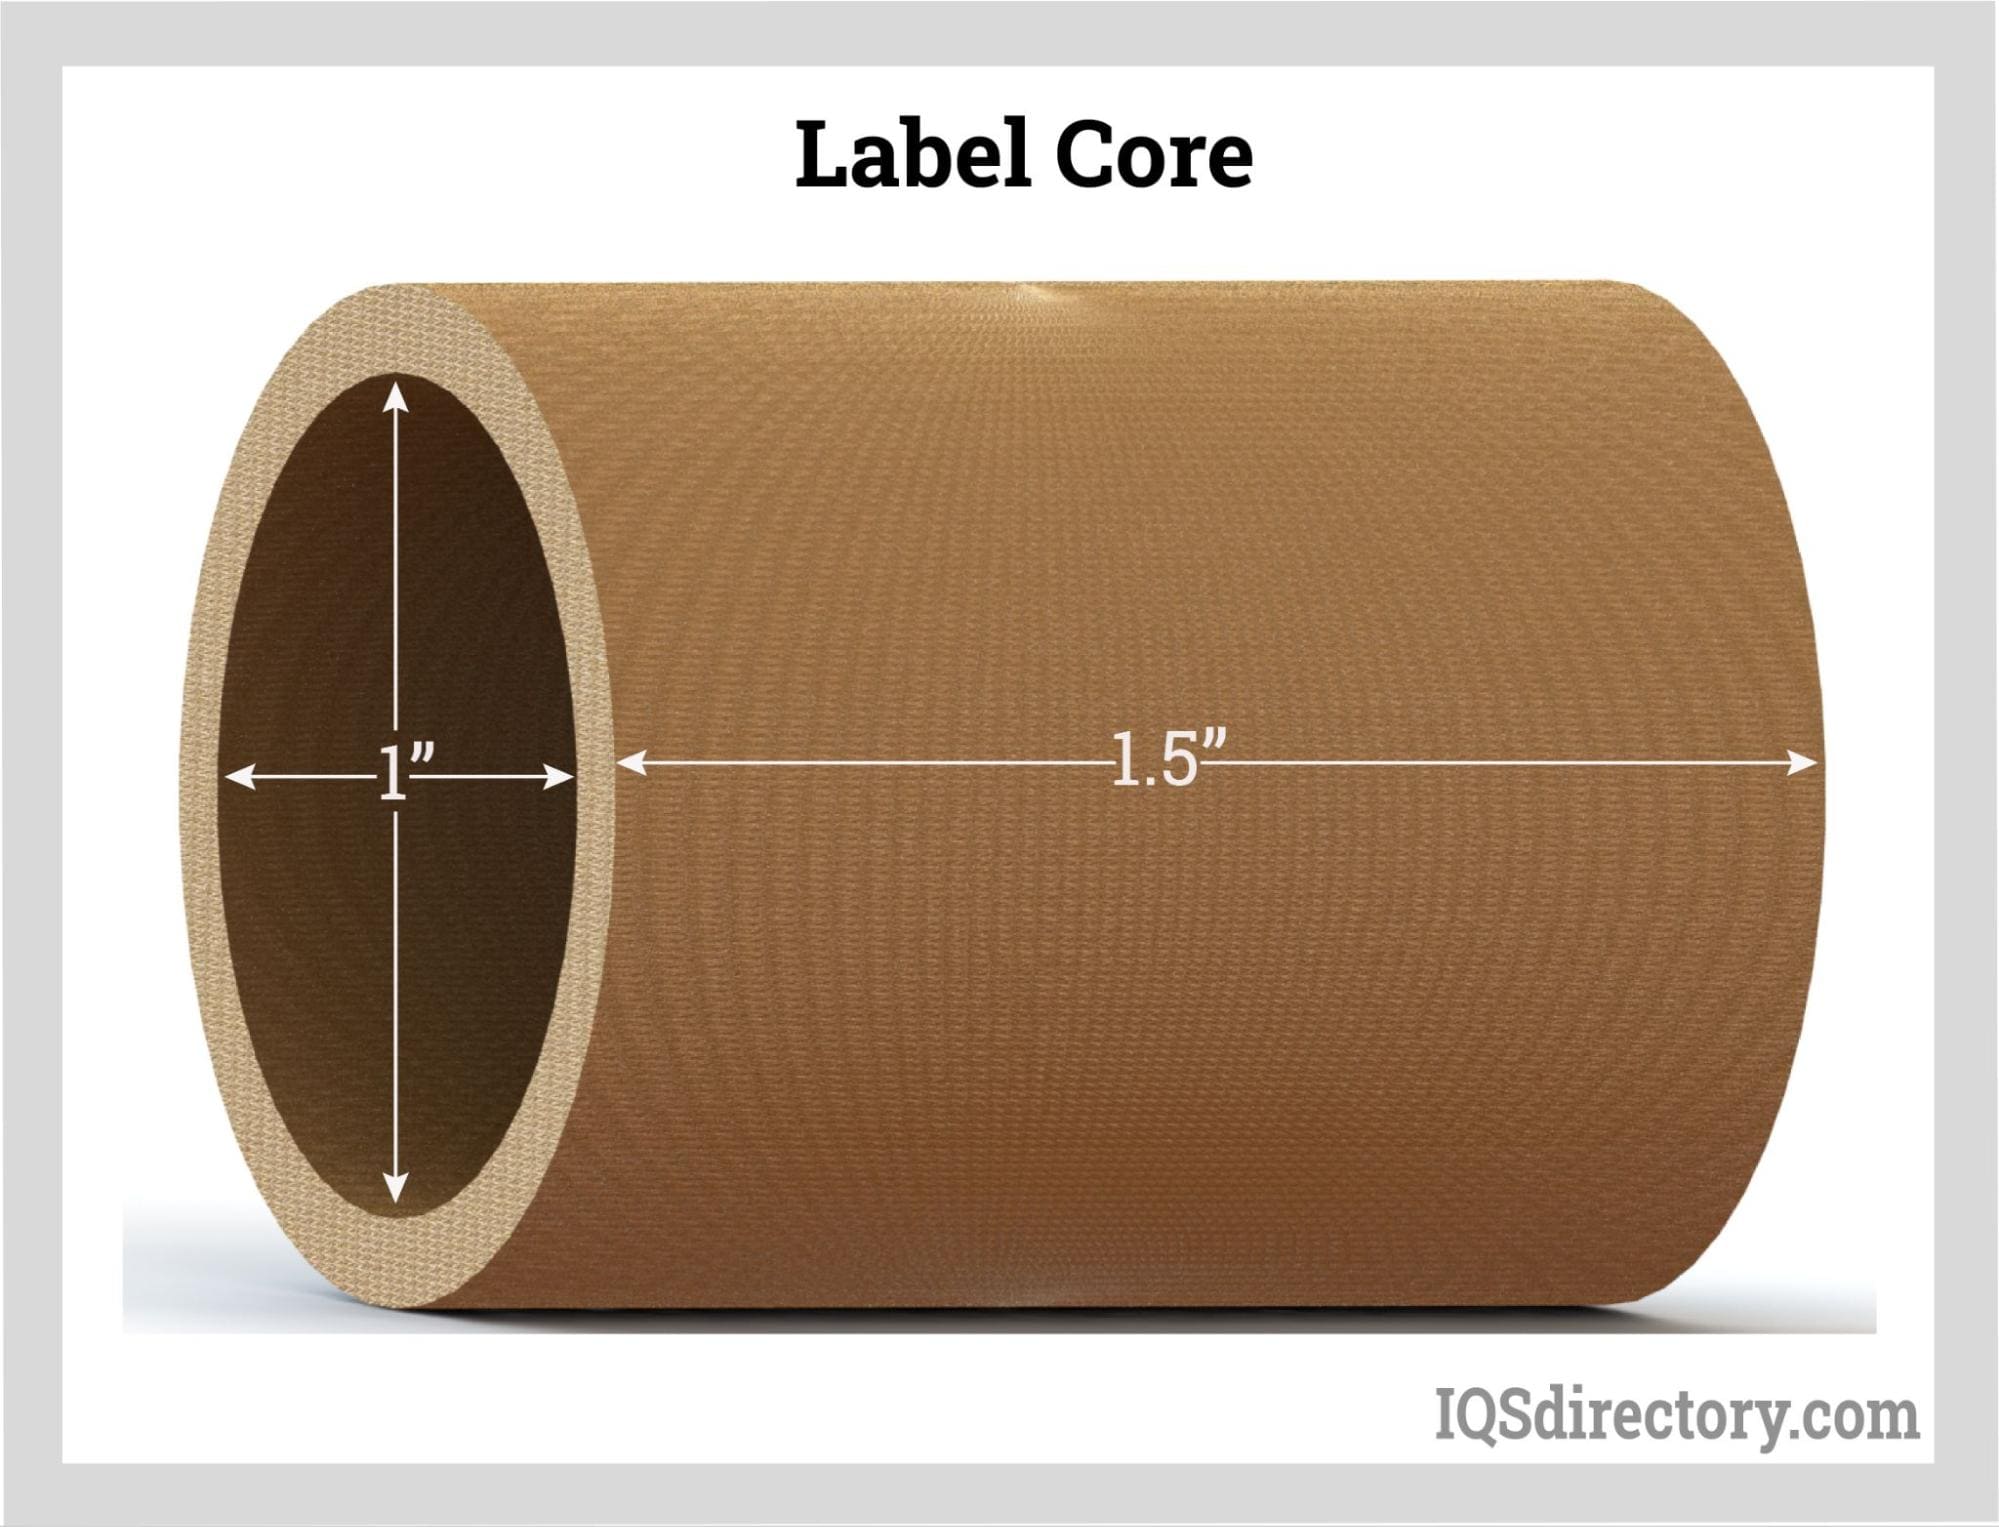 Label Core